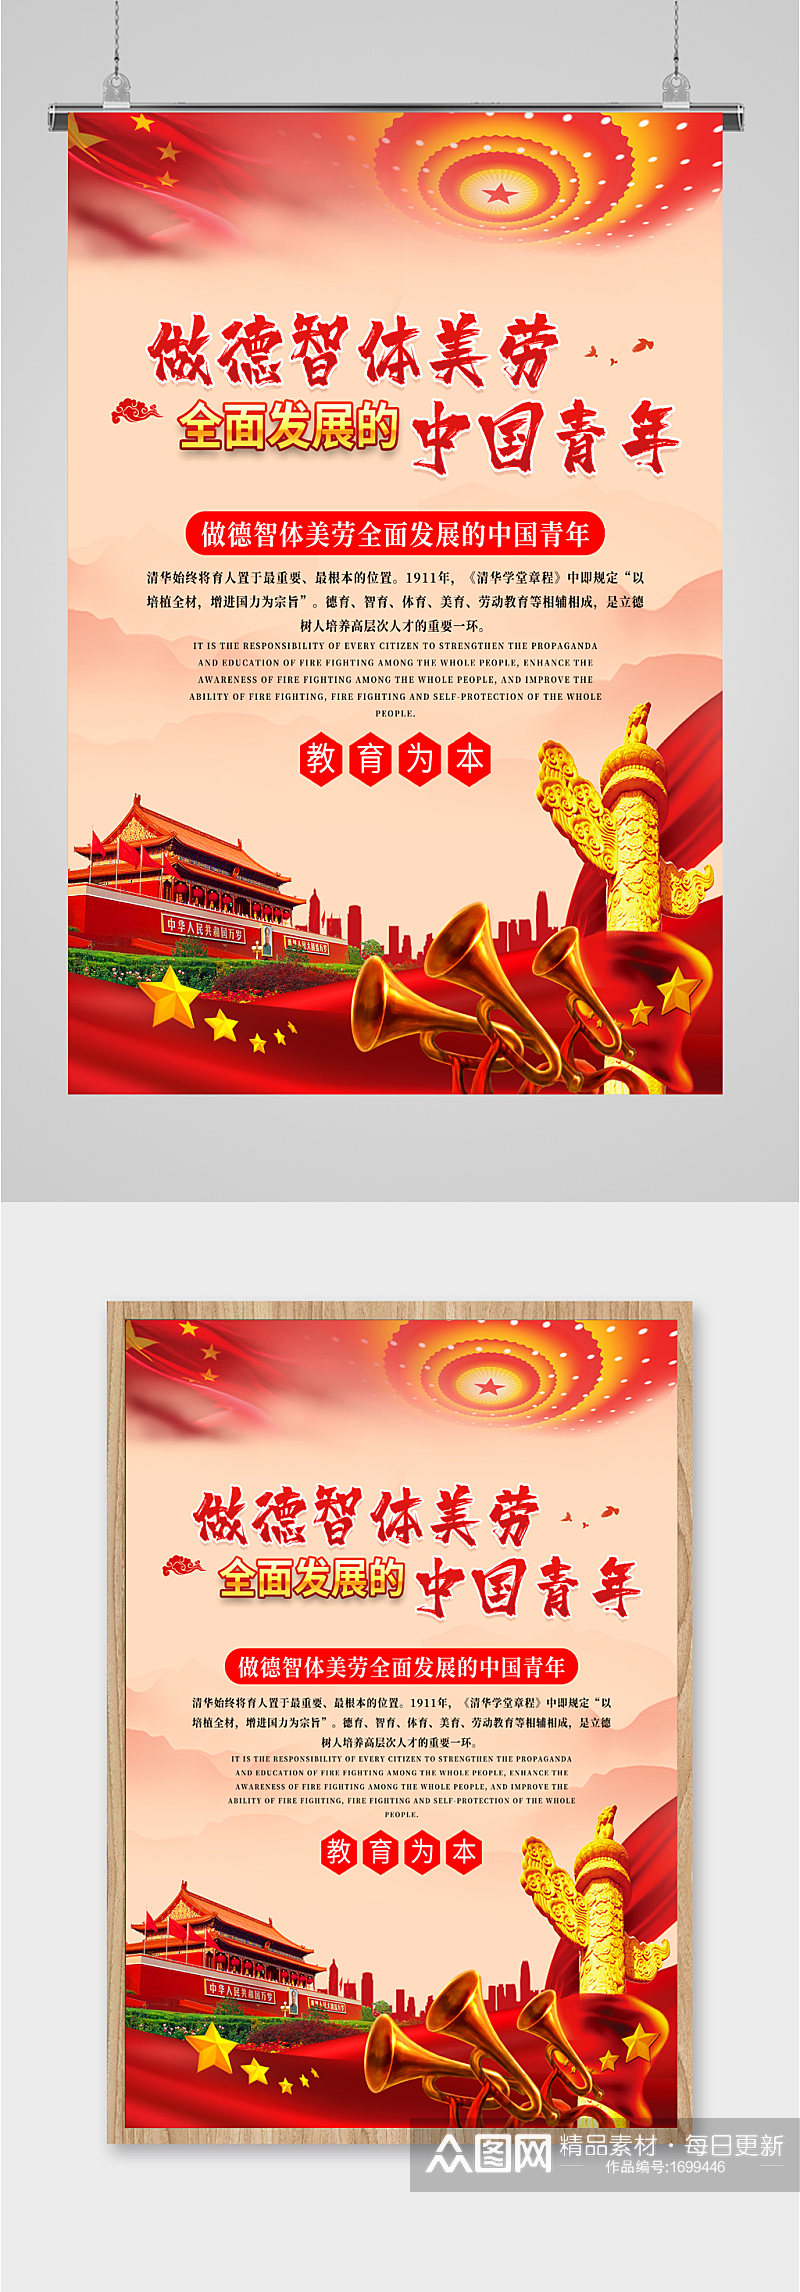 德智体美劳中国青年海报素材